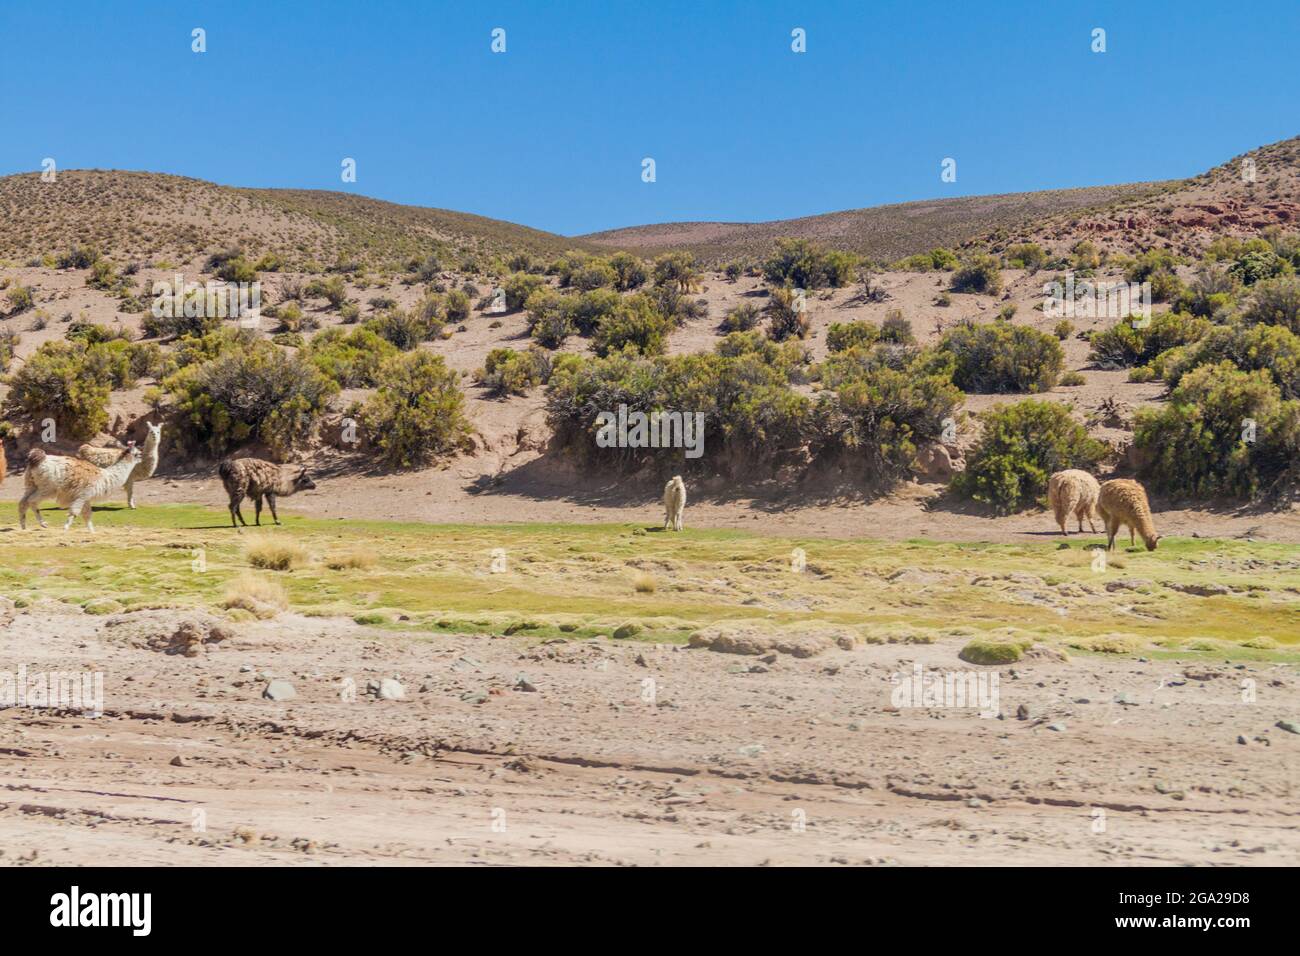 Troupeau de lamas (alpacas) dans la région d'Aguanapampa, à l'Altiplano bolivien Banque D'Images